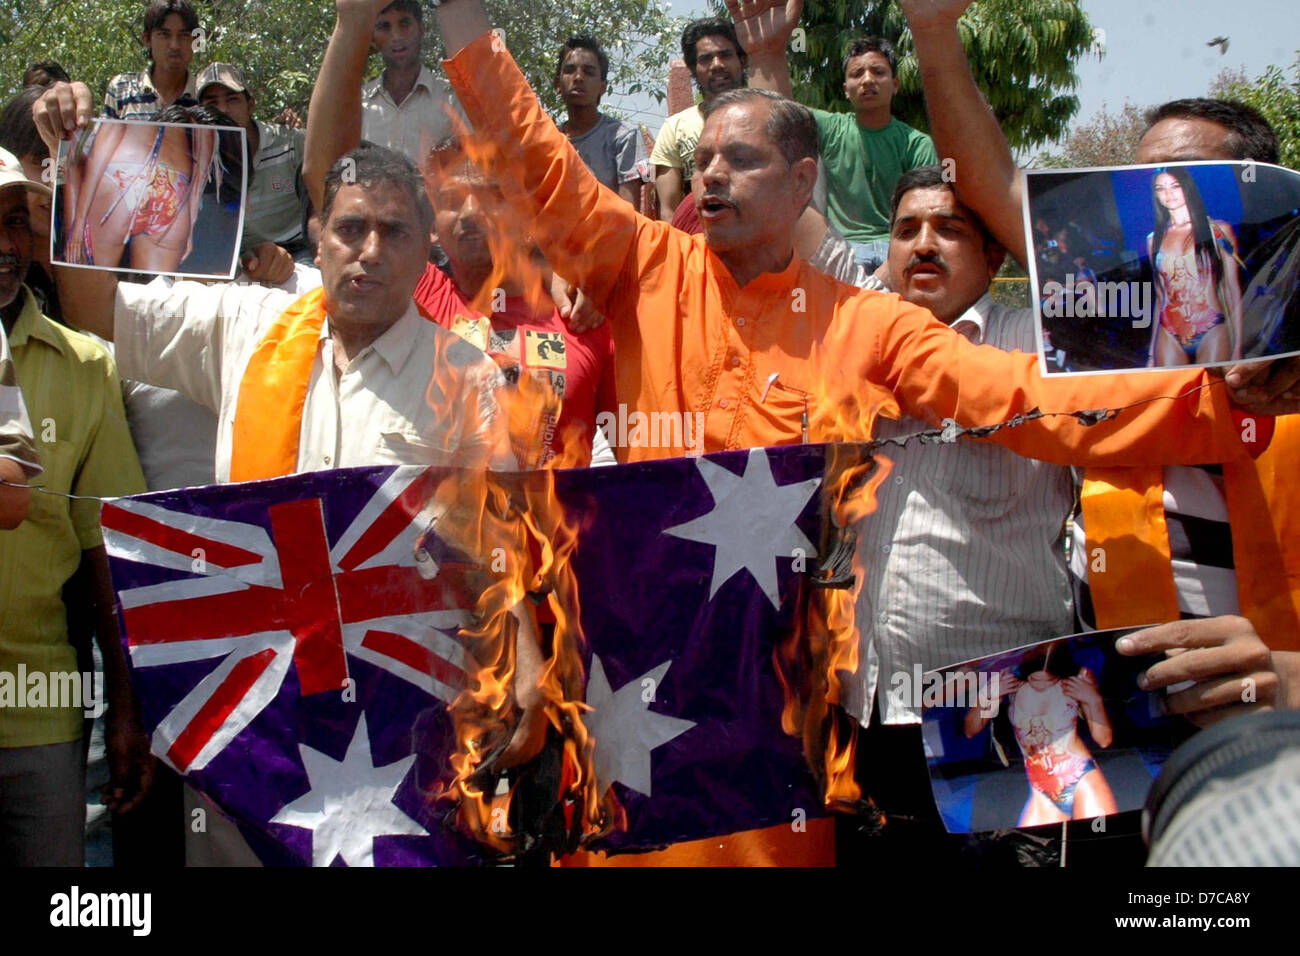 Les militants du Shiv Sena crier des slogans lors d'une manifestation de protestation à Amritsar, contre la représentation de l'image de déesse Banque D'Images